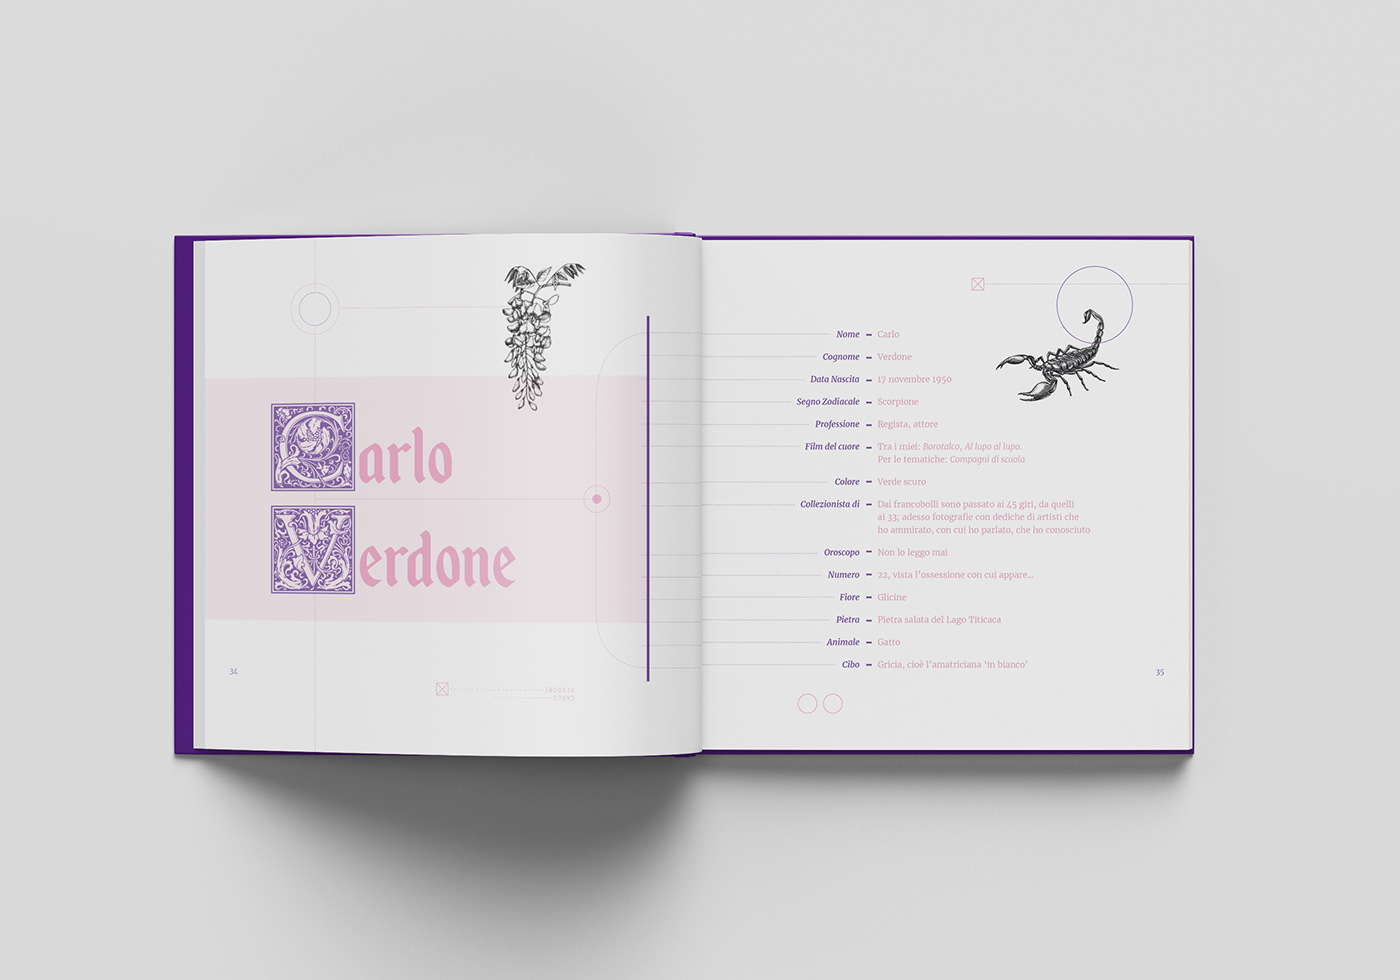 actor Anecdotes book cinecitta Cinema editorial graphic Italy superstition violet